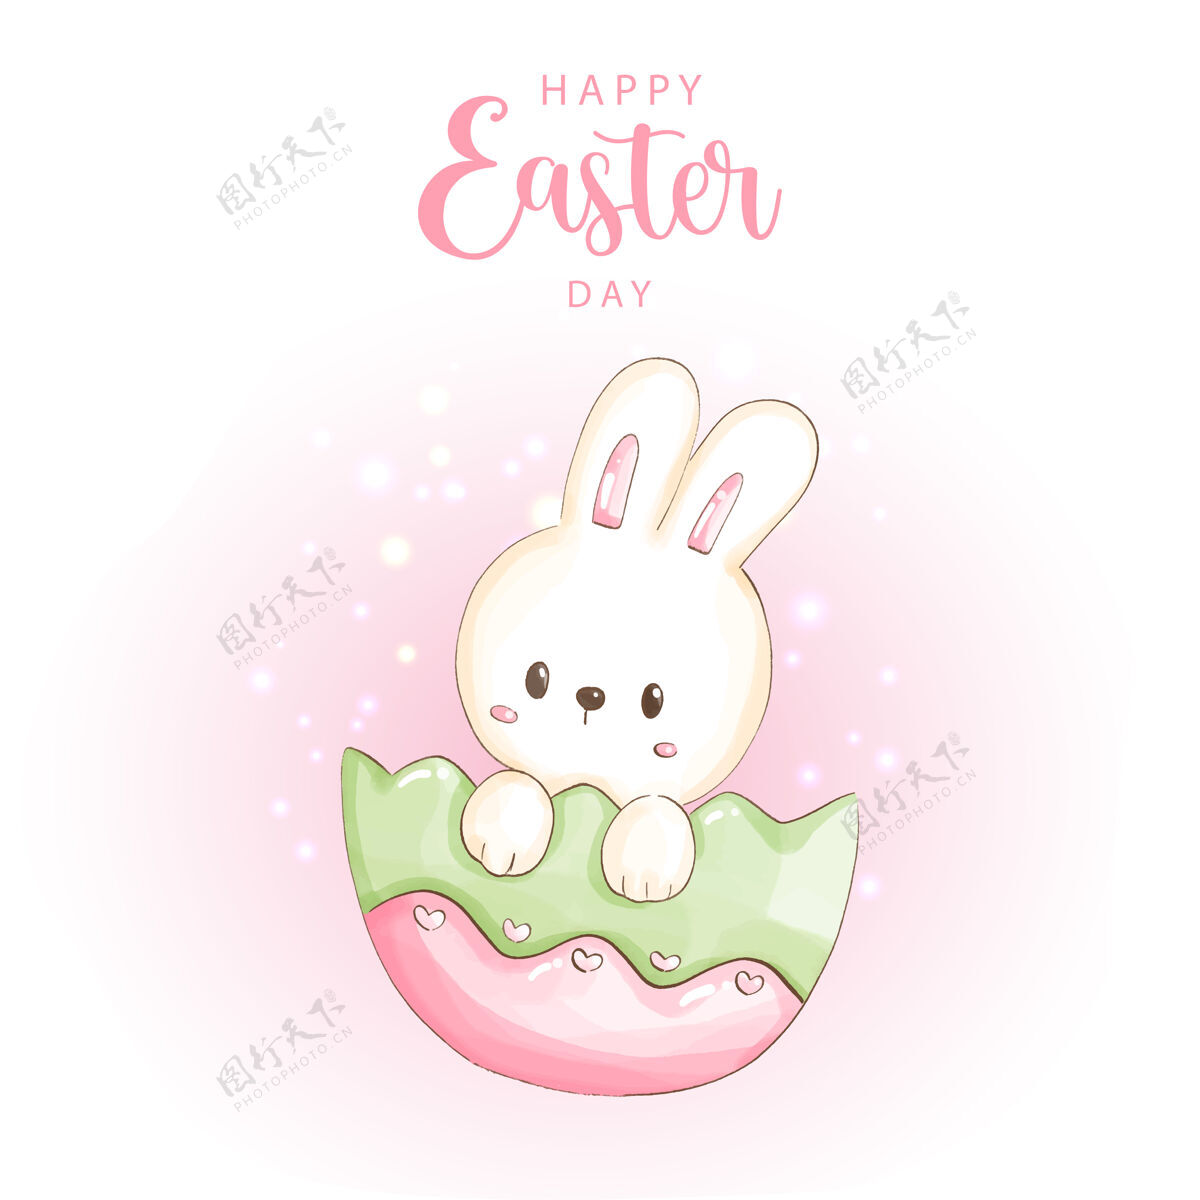 卡片复活节快乐 可爱的兔子和复活节彩蛋问候语复活节快乐兔子